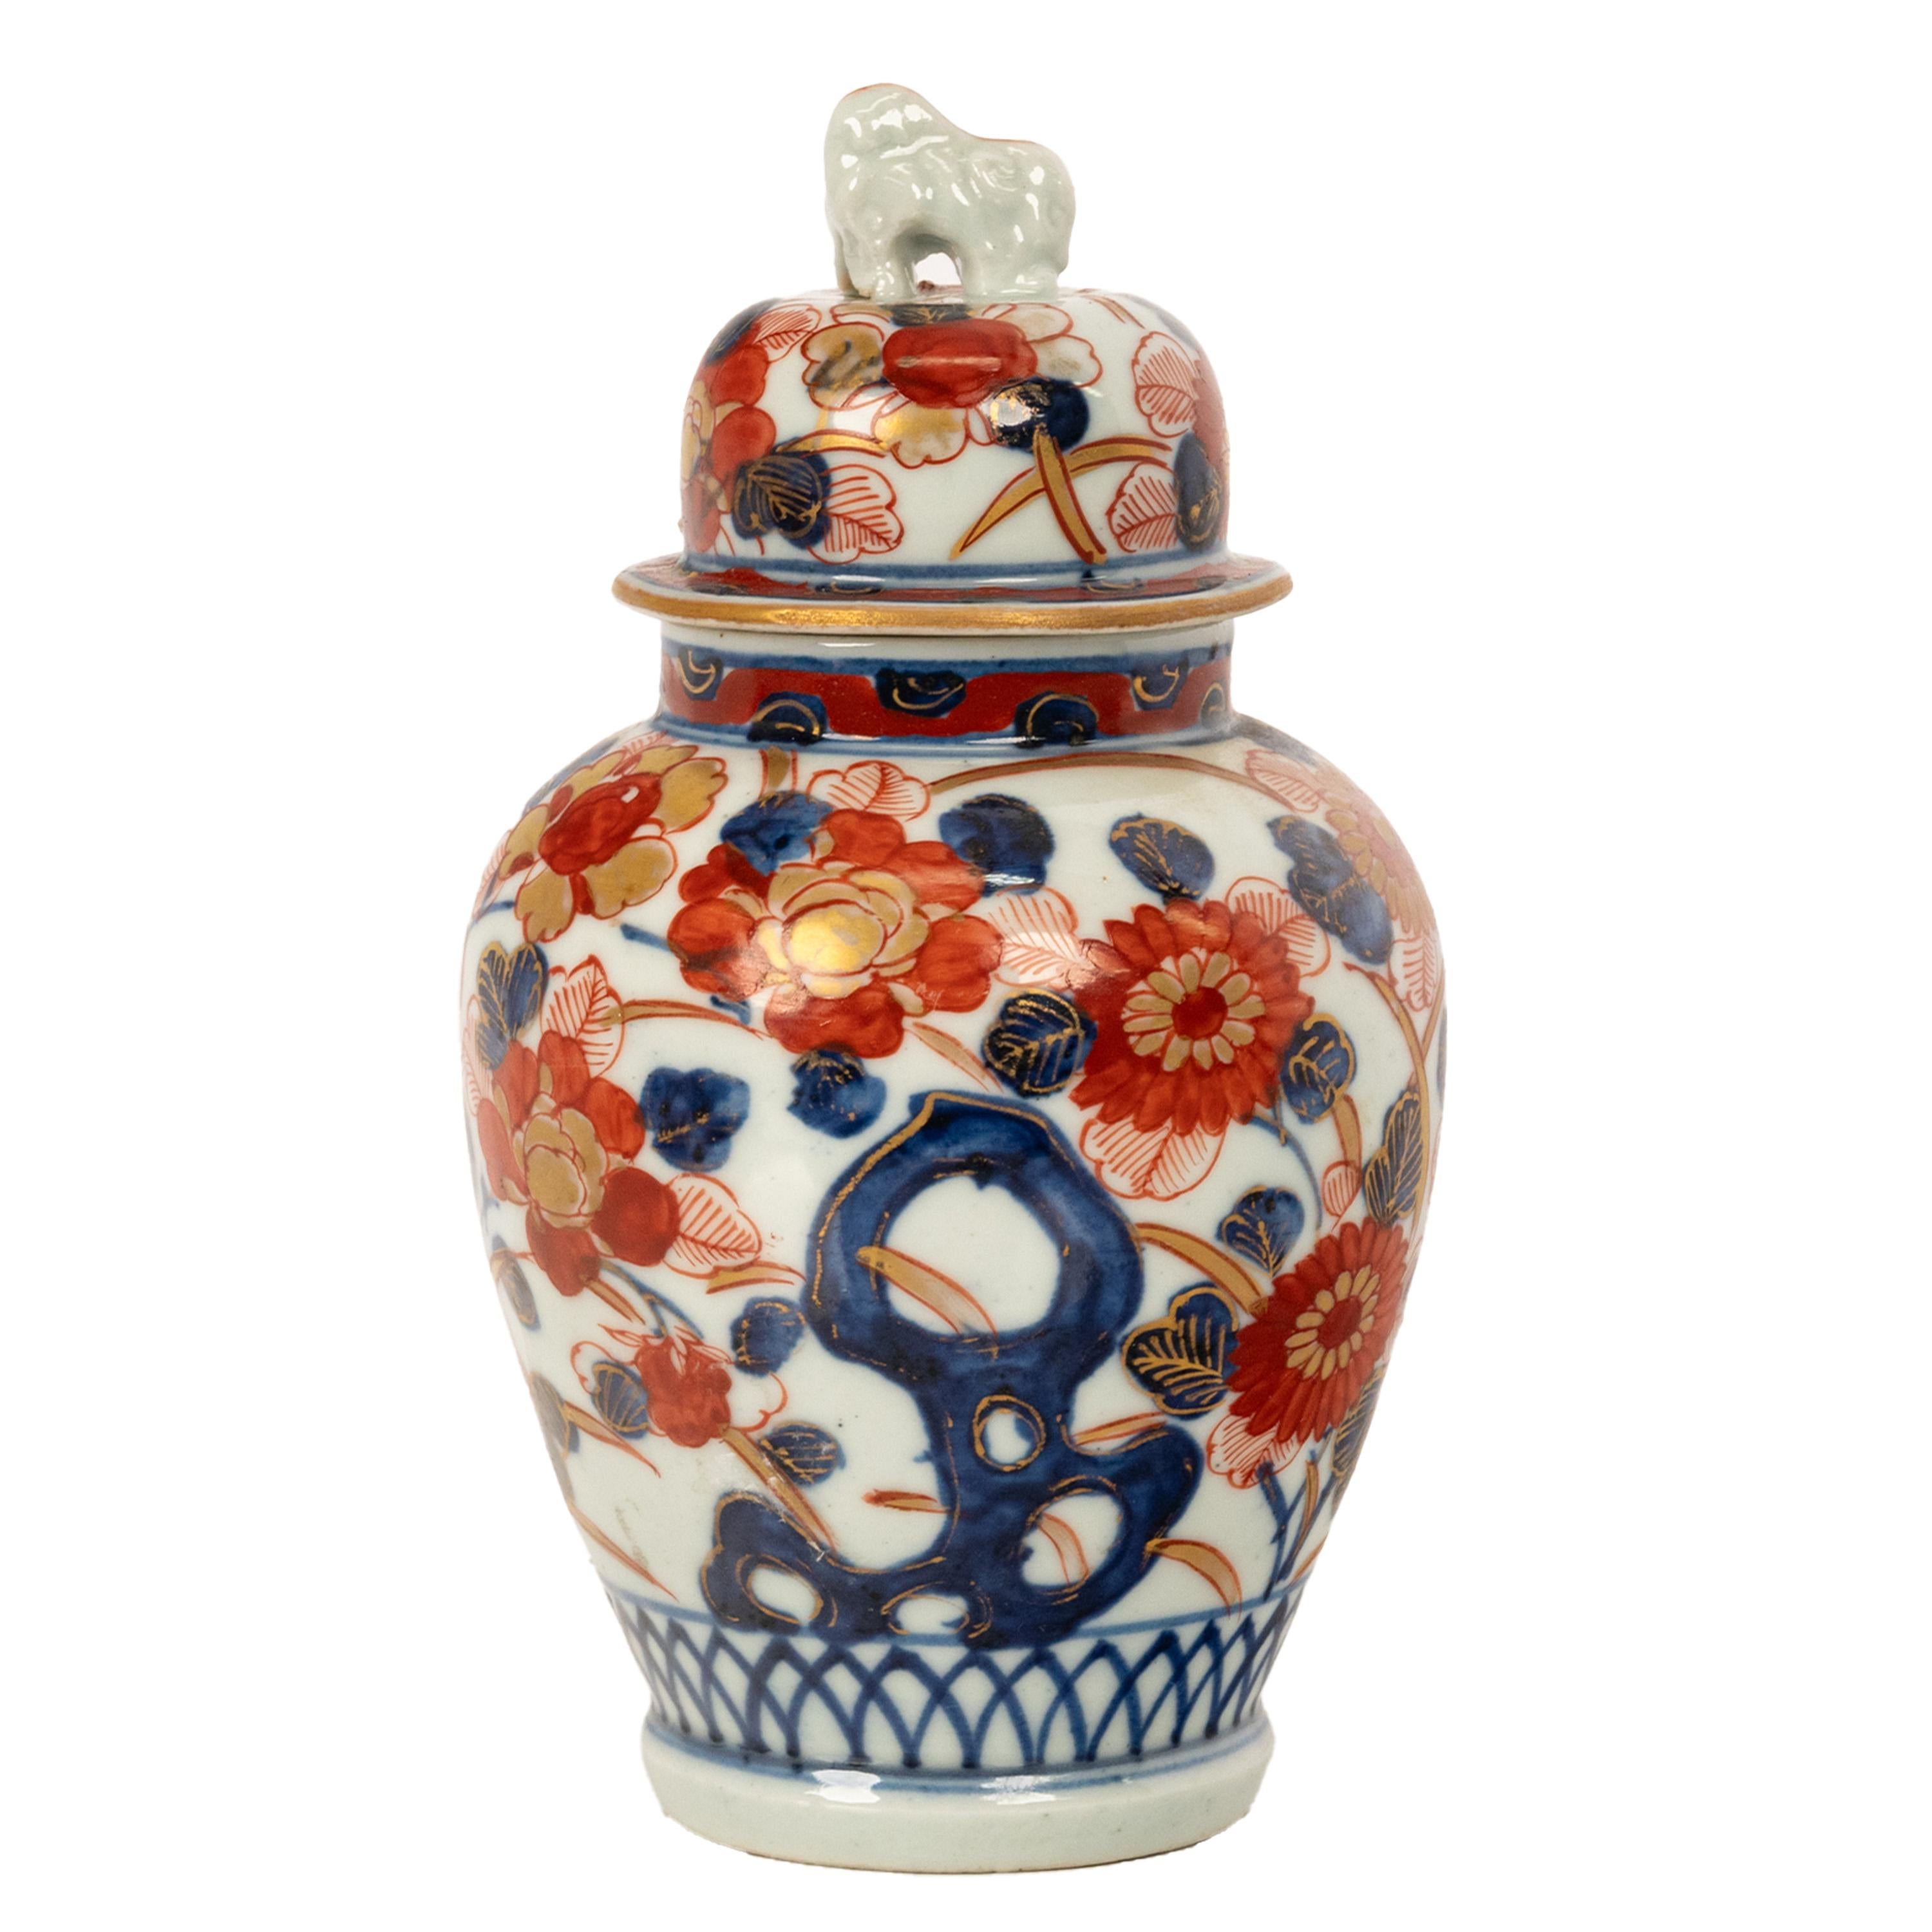 Un bon pot à gingembre/vase à couvercle en porcelaine japonaise Imari du XIXe siècle, vers 1890.
Le couvercle surmonté d'un dôme est décoré d'un fleuron Komainu (chien-lion japonais gardien de temple). Le vase de forme ovoïde et le couvercle sont